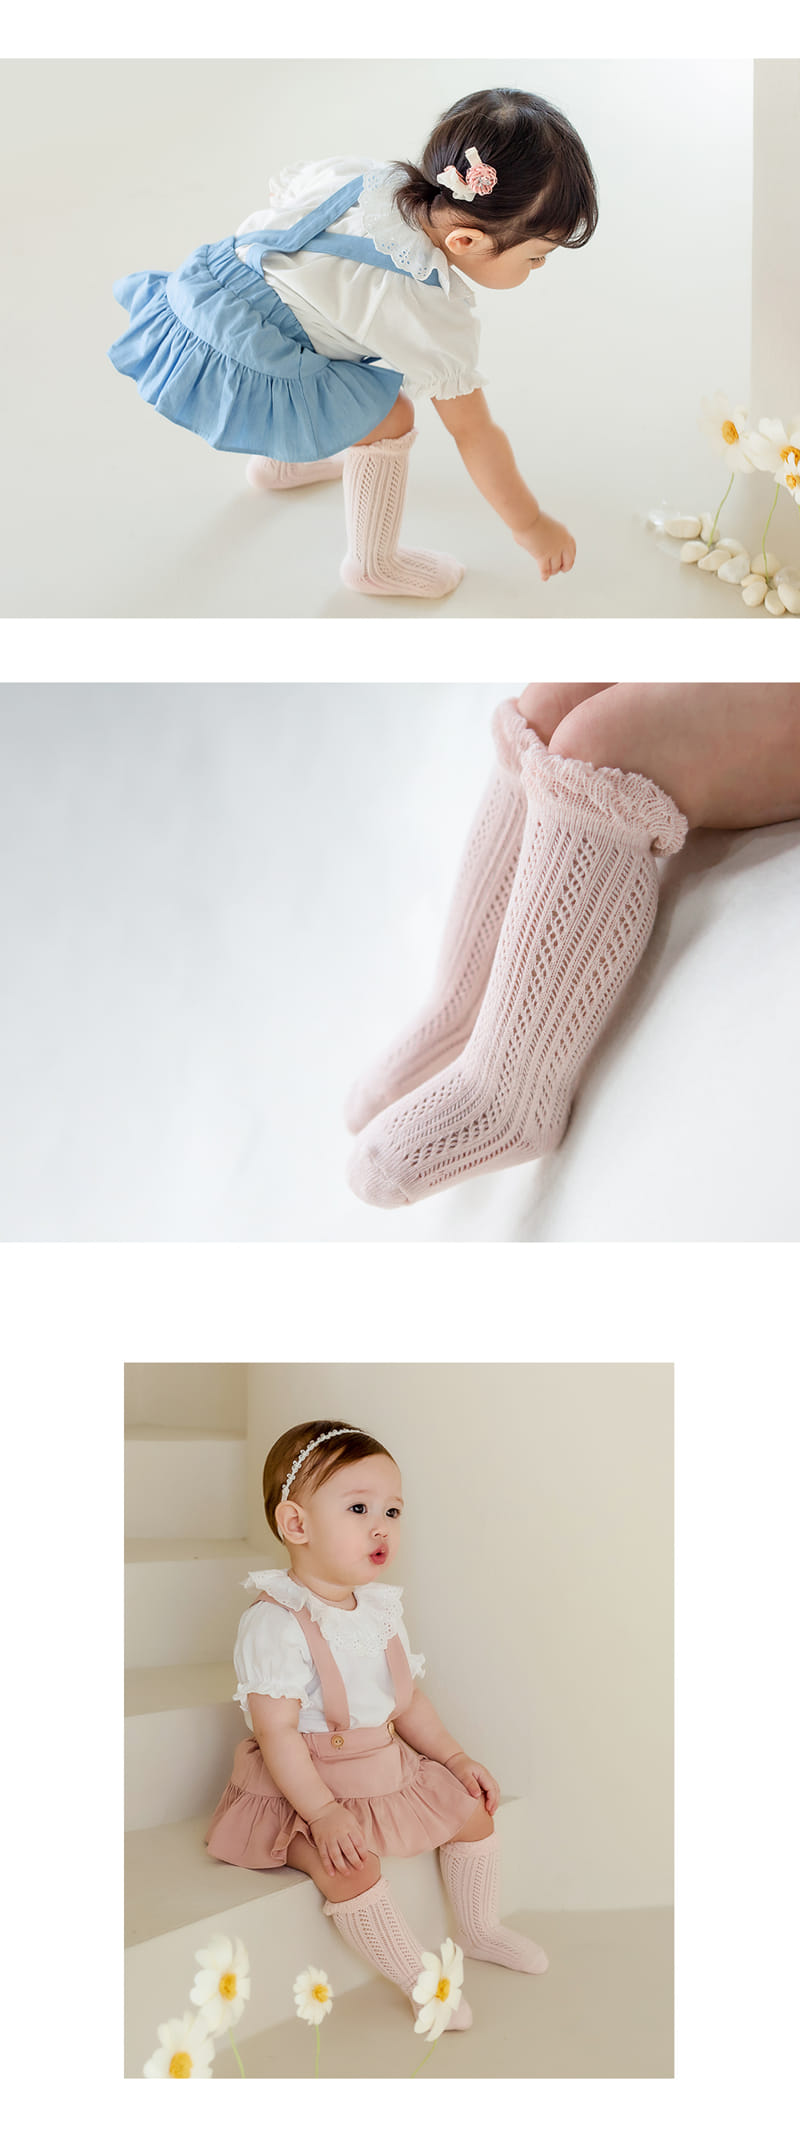 Kids Clara - Korean Baby Fashion - #babyootd - Double Ray Baby Knee Socks (5ea 1set) - 3